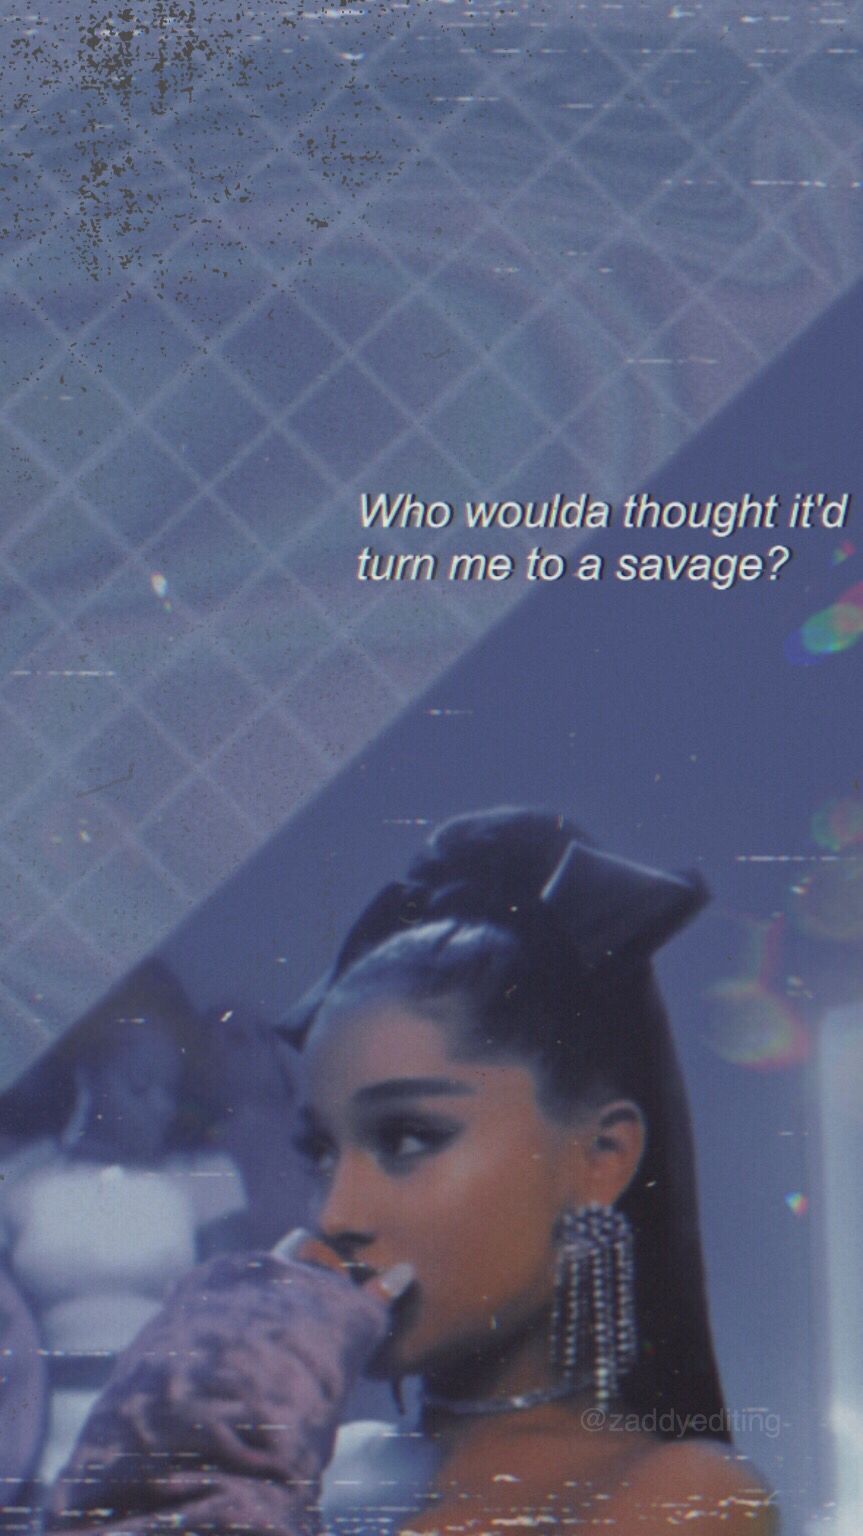  Ariana Grande Hintergrundbild 863x1536. rings lockscreen. Ariana grande background, Ariana grande lyrics, Ariana grande wallpaper